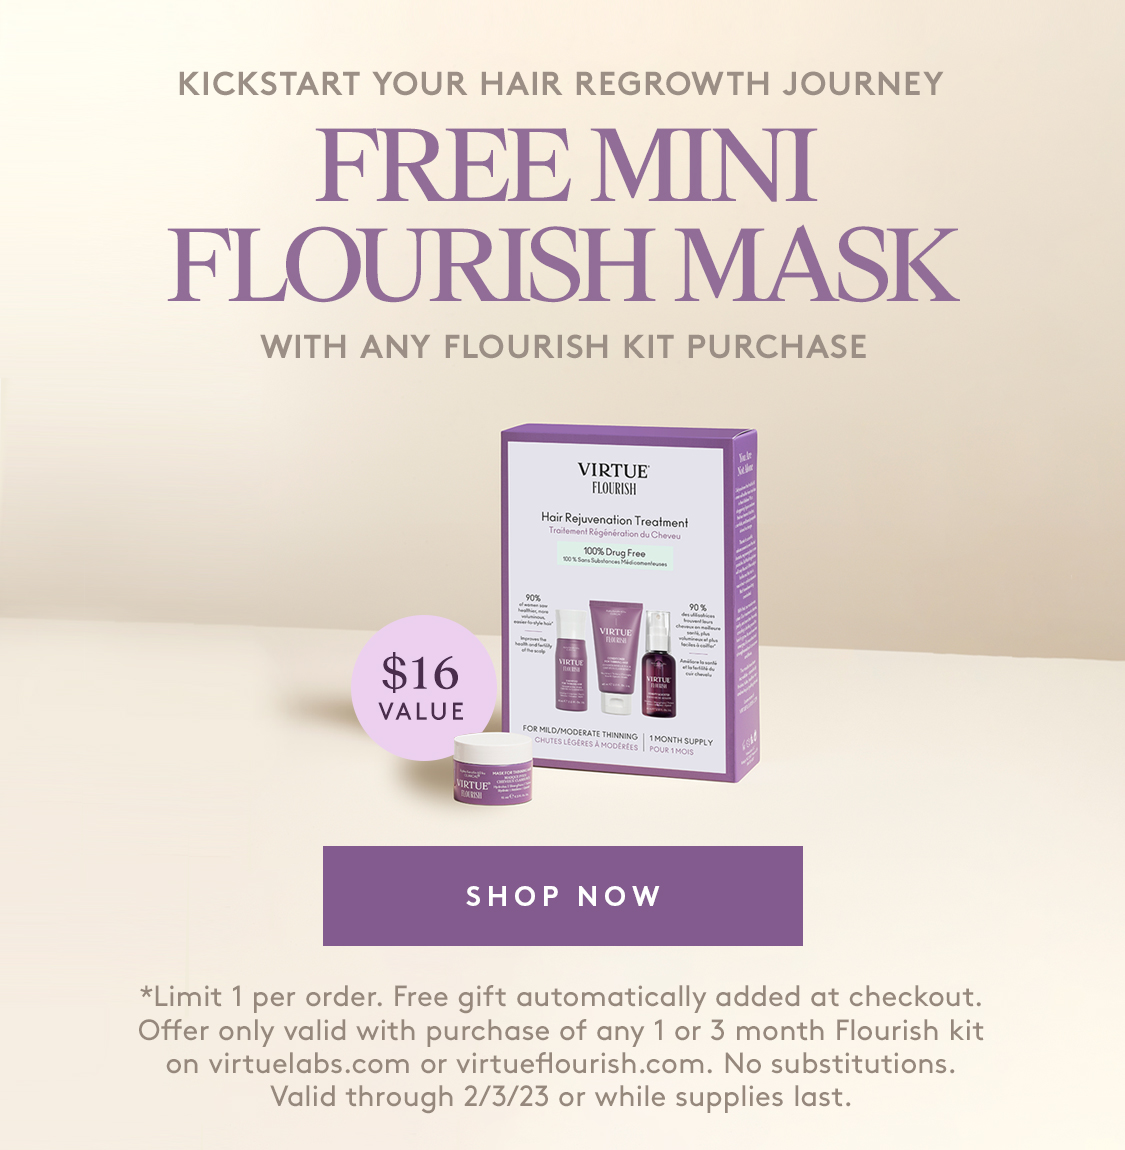 Free Mini Flourish Mask with any Flourish Kit purchase